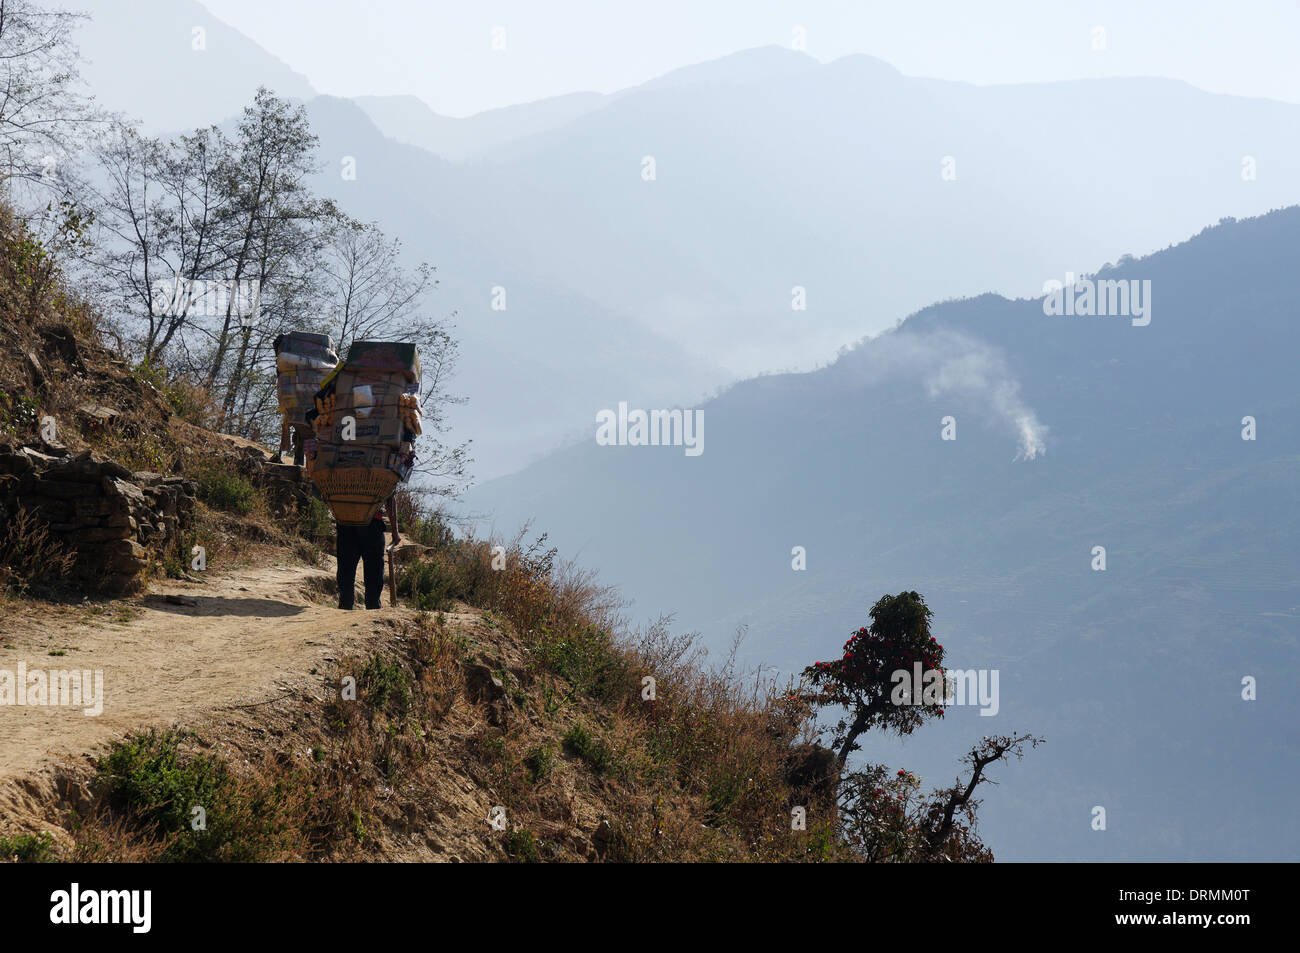 Un sherpa transportant une lourde charge sur un chemin de montagne au Népal Banque D'Images